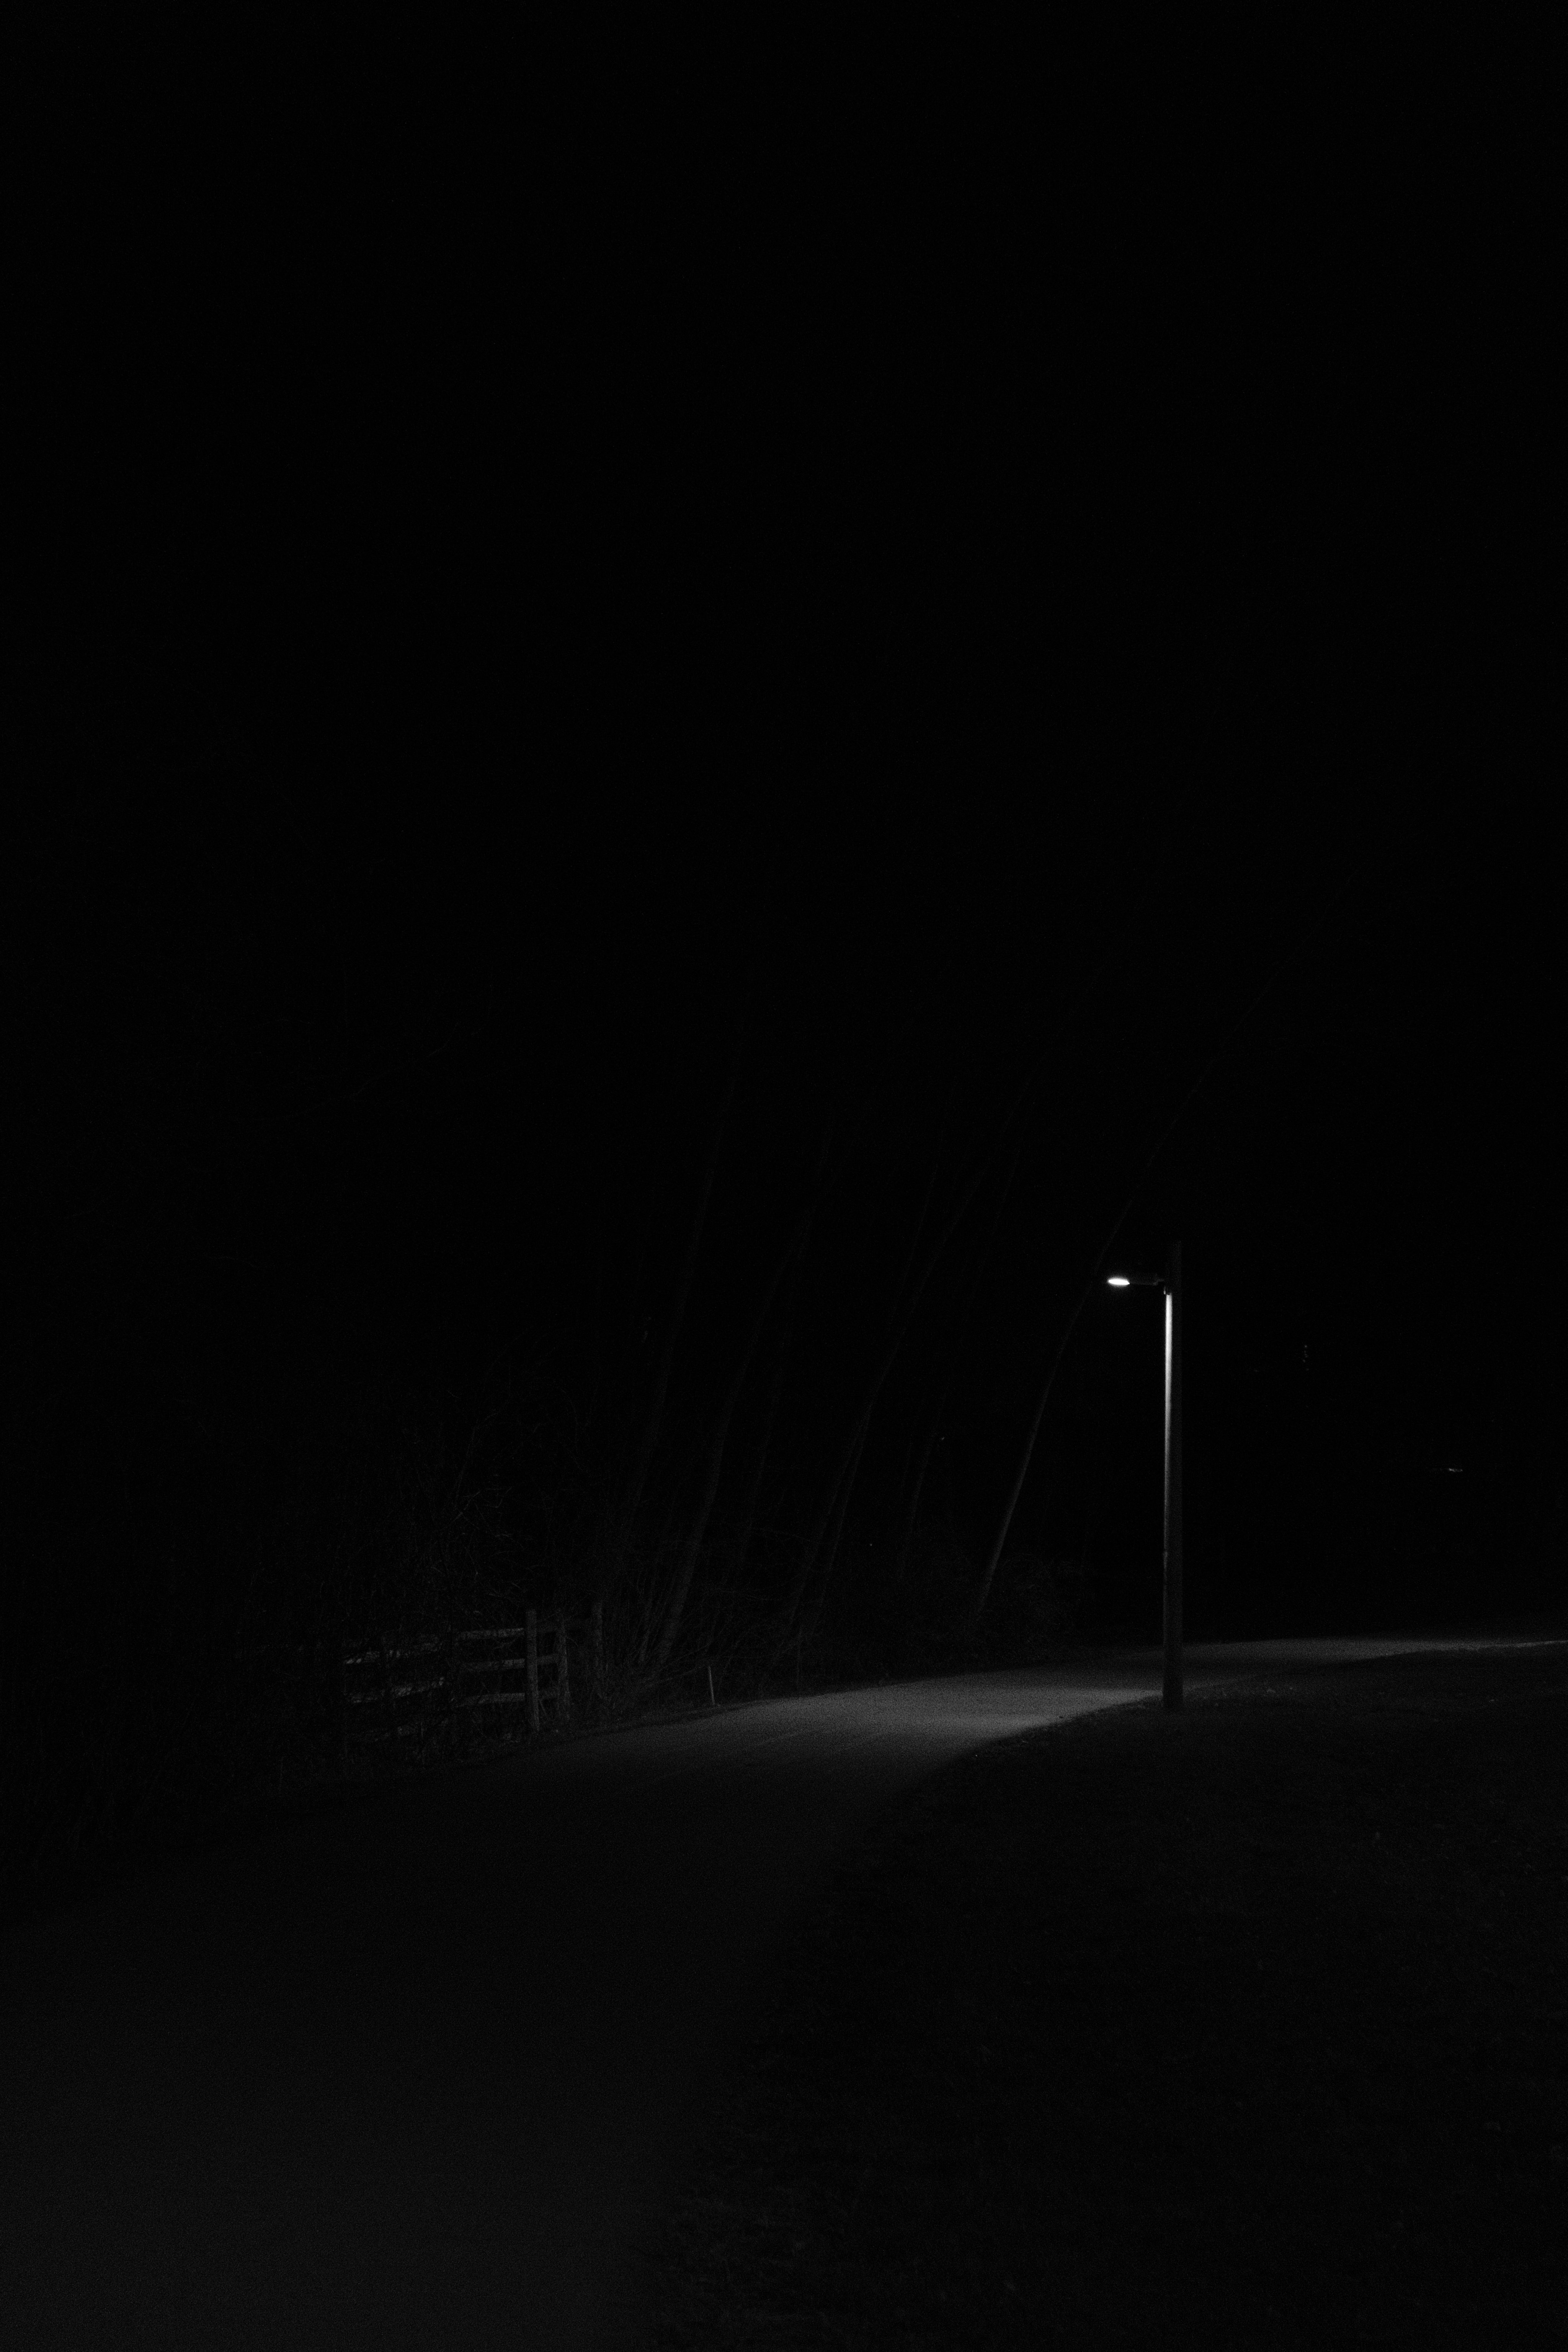 black, bw, glow, night, lantern, road, lamp, chb 32K